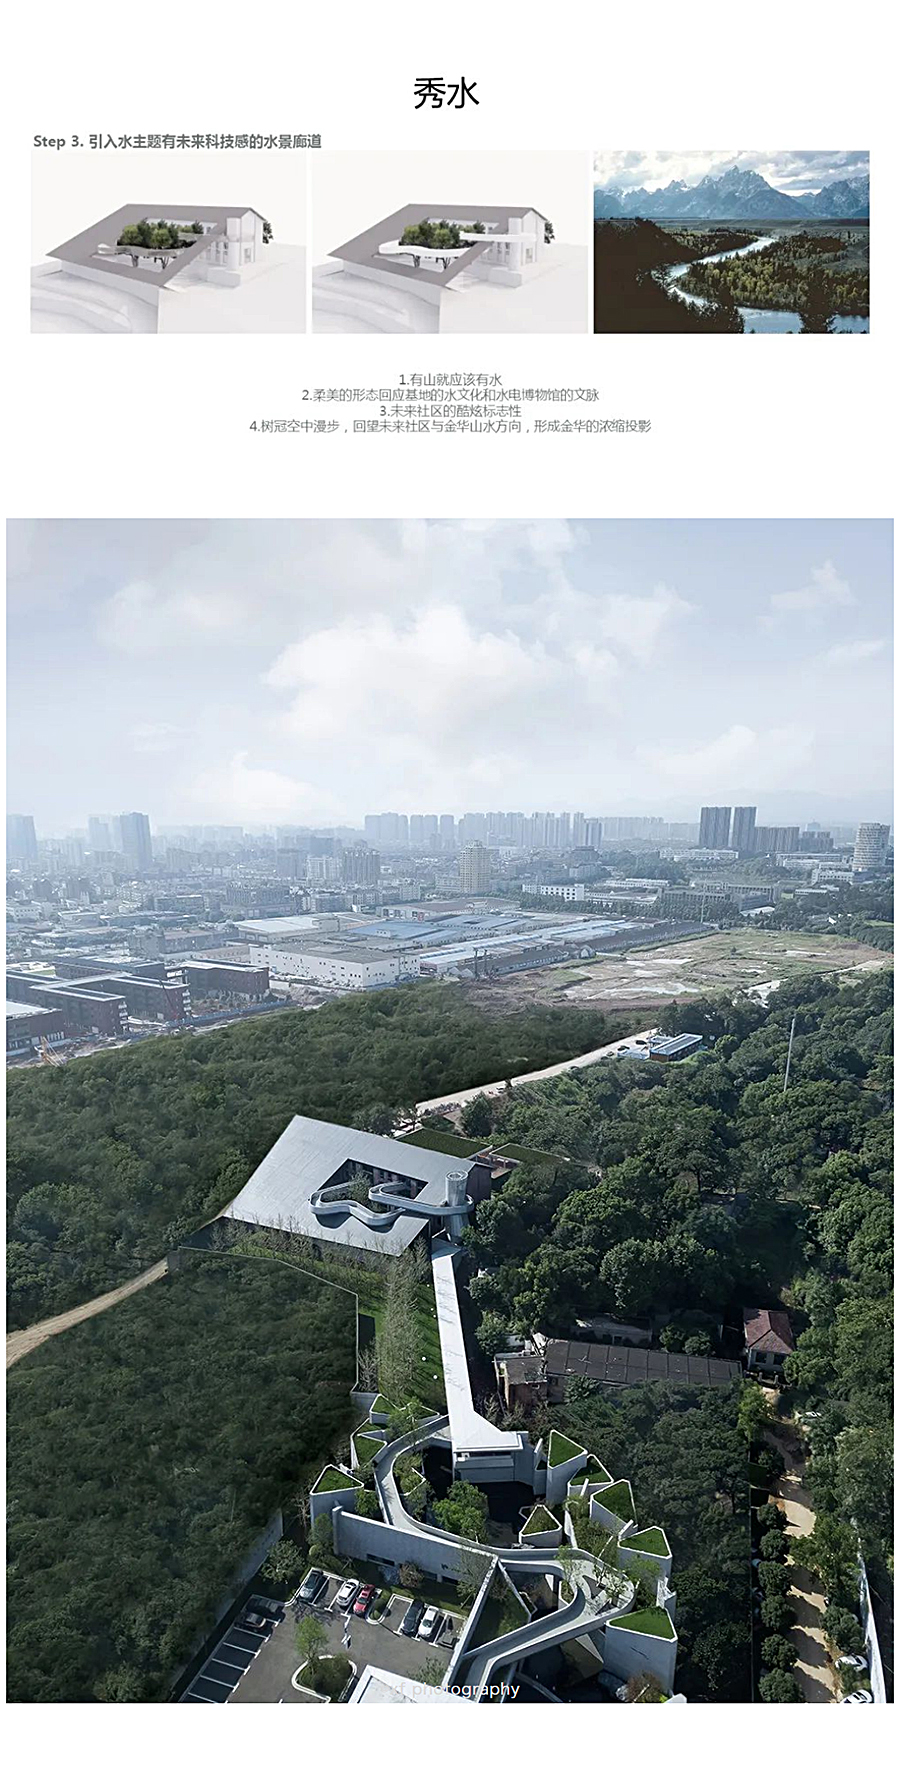 一座建筑投影一方山水-_-金华山嘴头未来社区中心_0010_图层-11.jpg